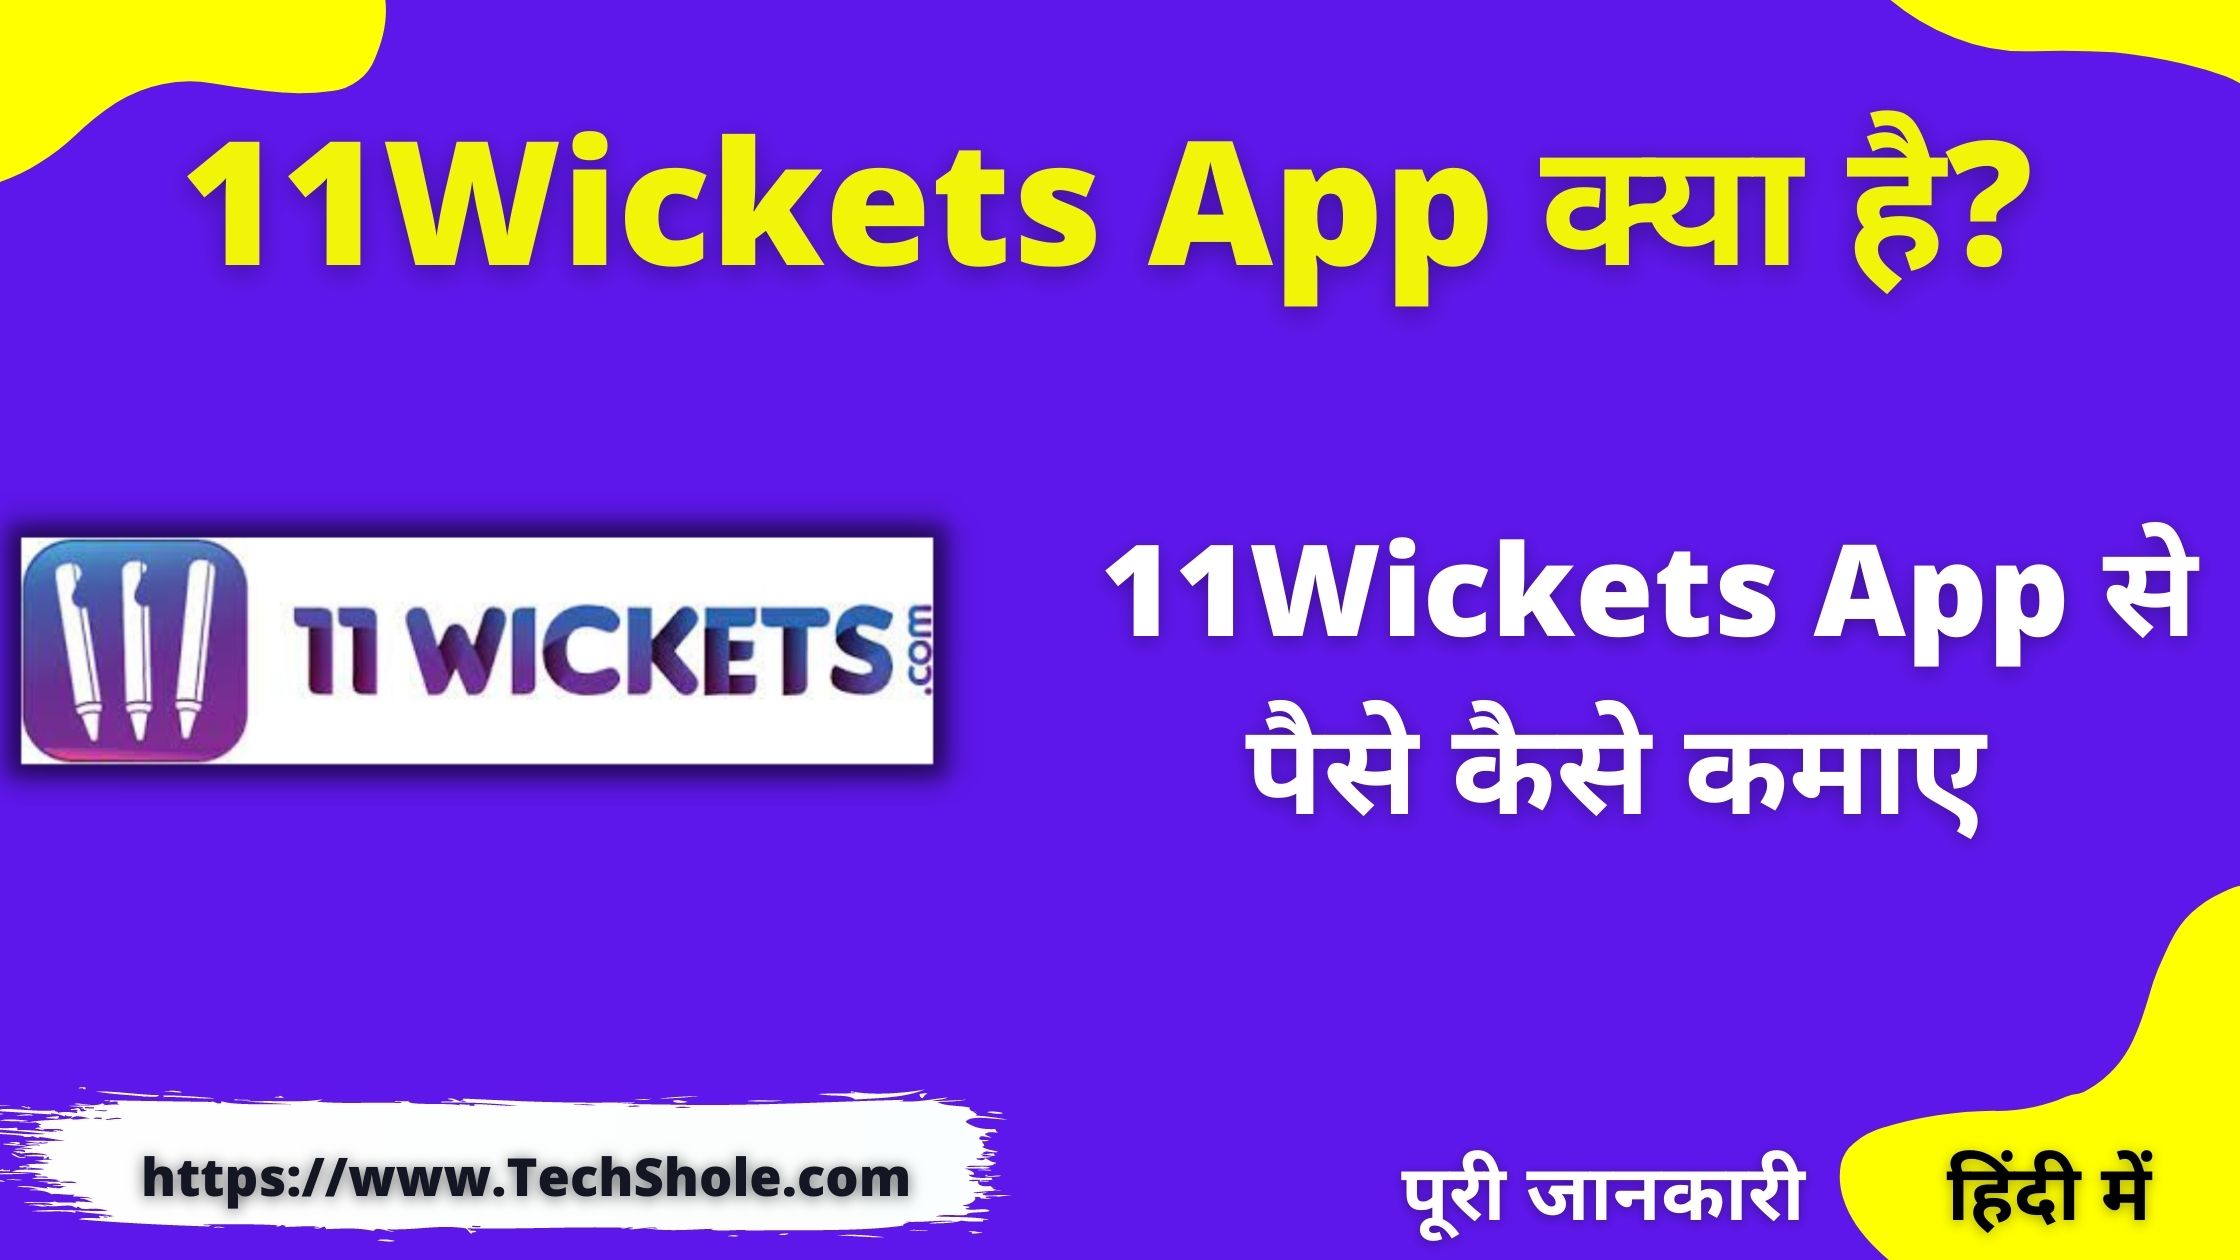 11Wickets App से पैसे कैसे कमाए हिंदी में - 11Wickets App Se Paise Kaise kamaye Referral Code hindi